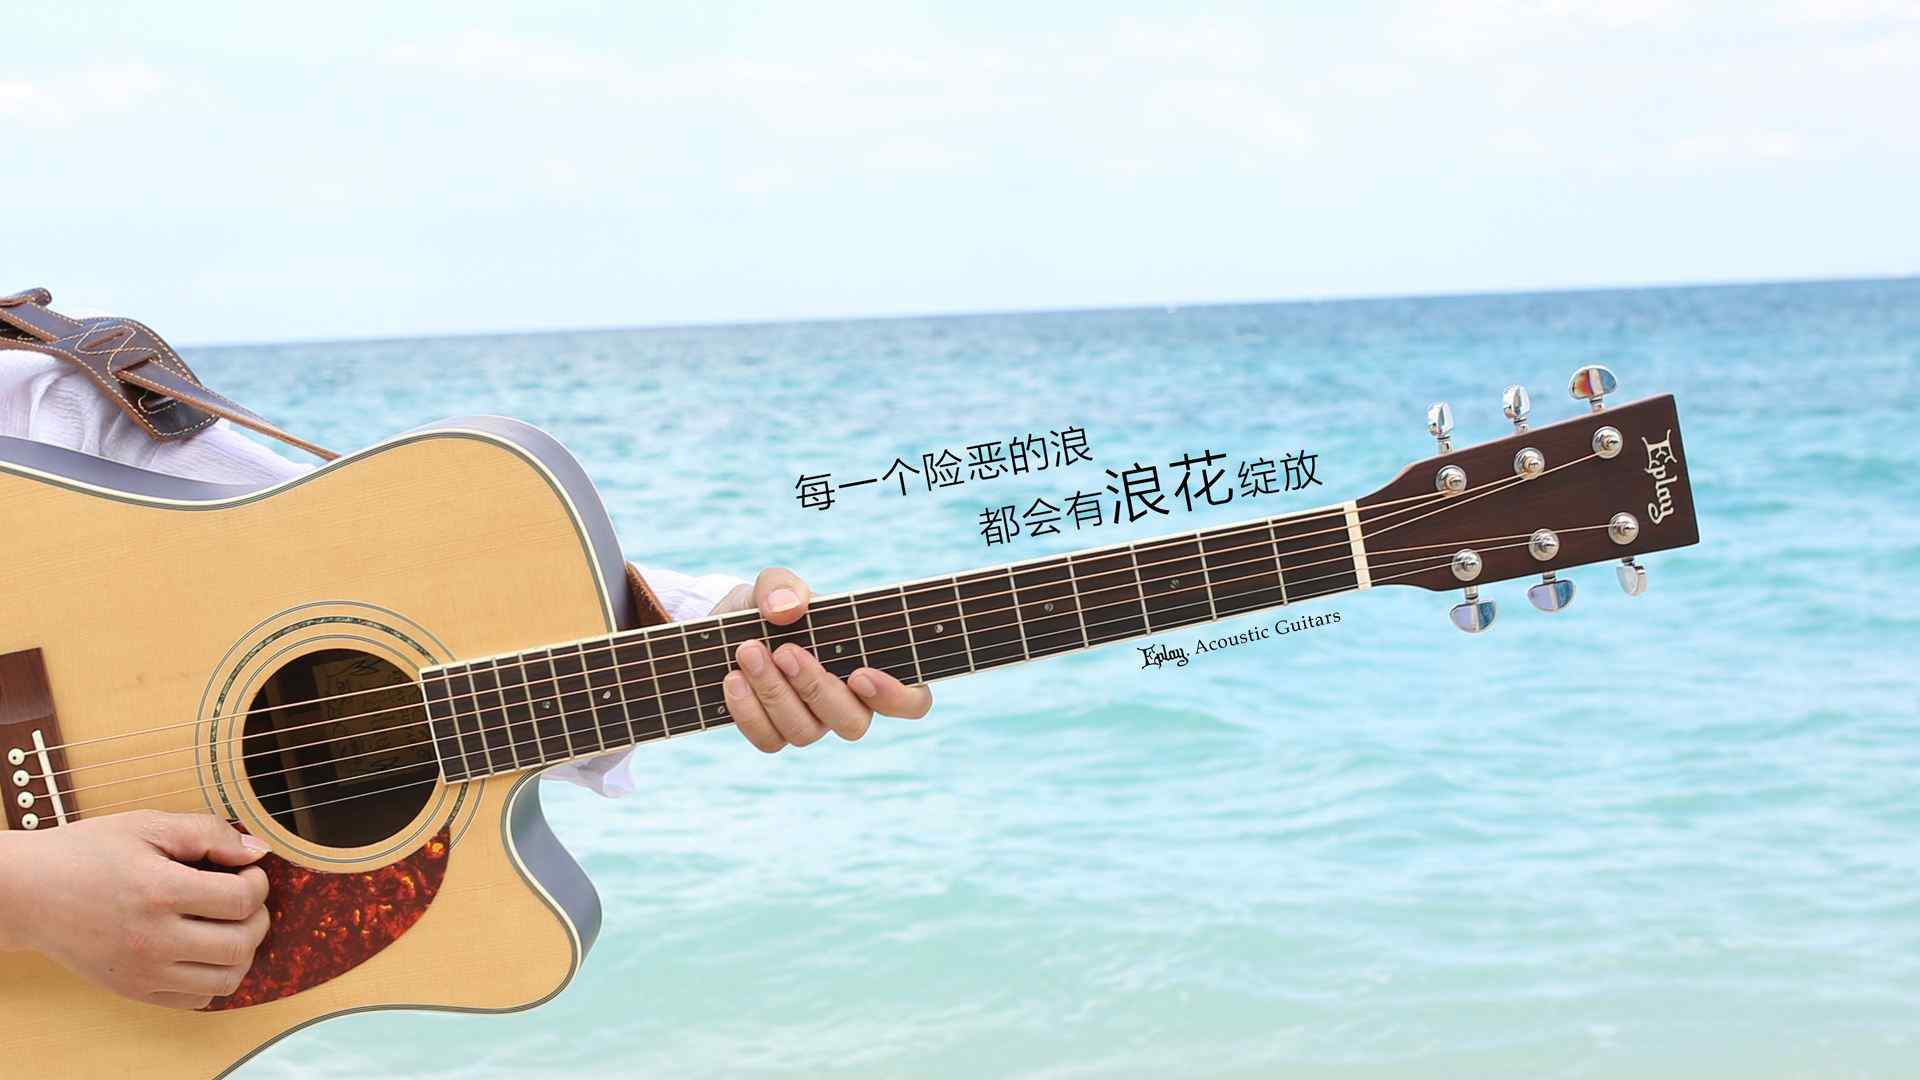 海边蓝色文字吉他高清桌面壁纸